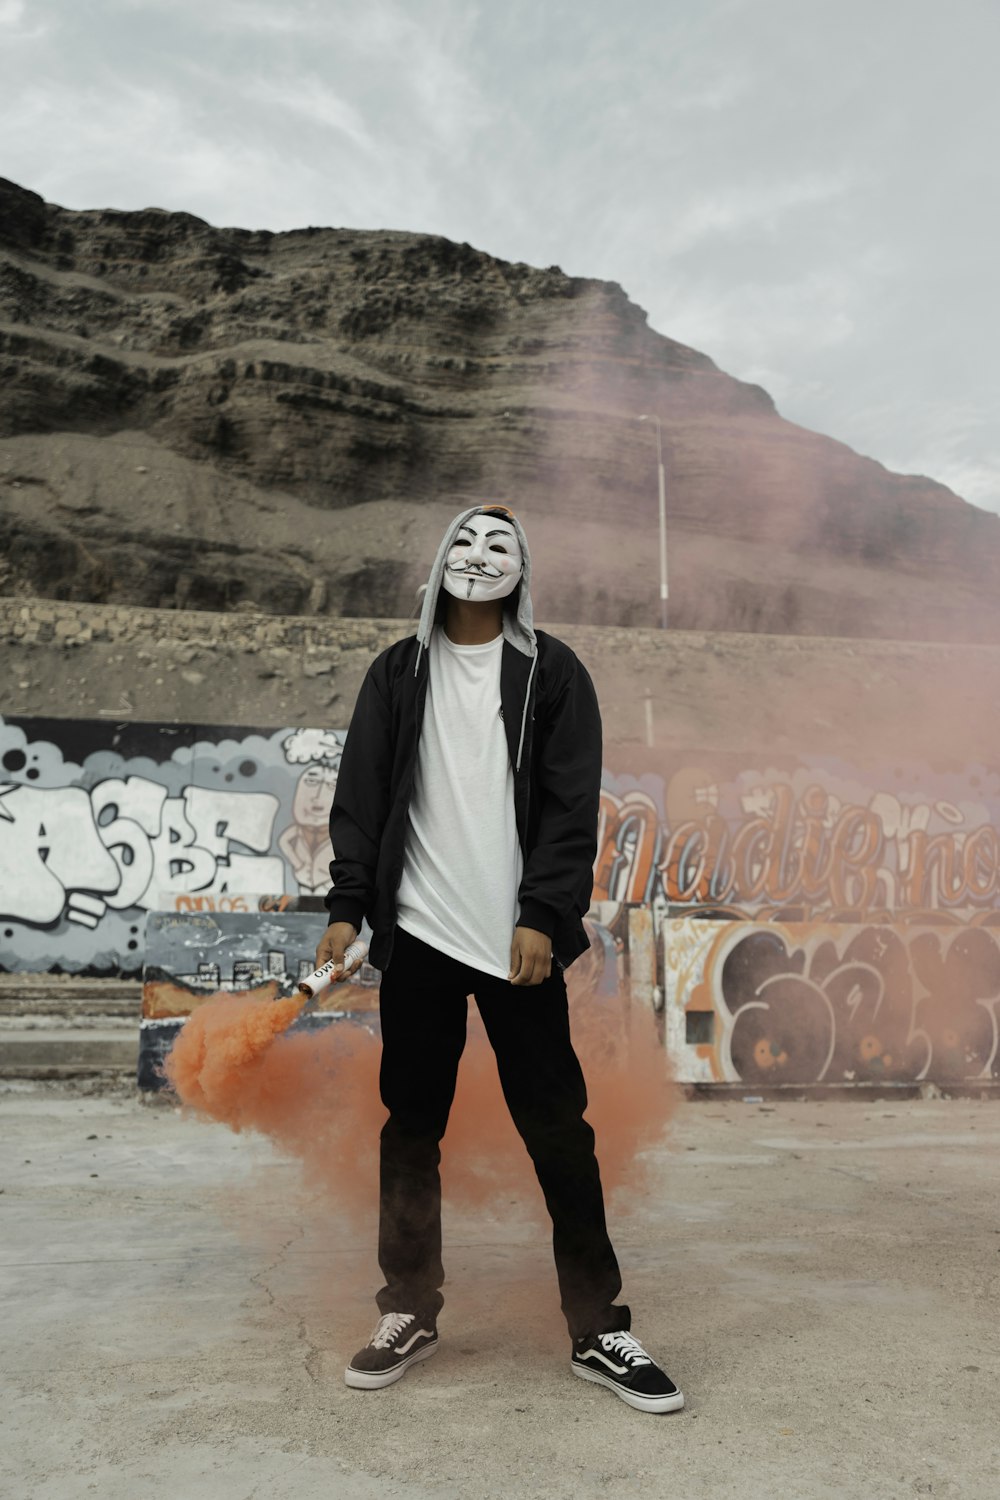 Ein Mann mit Maske, der vor einer Wand steht